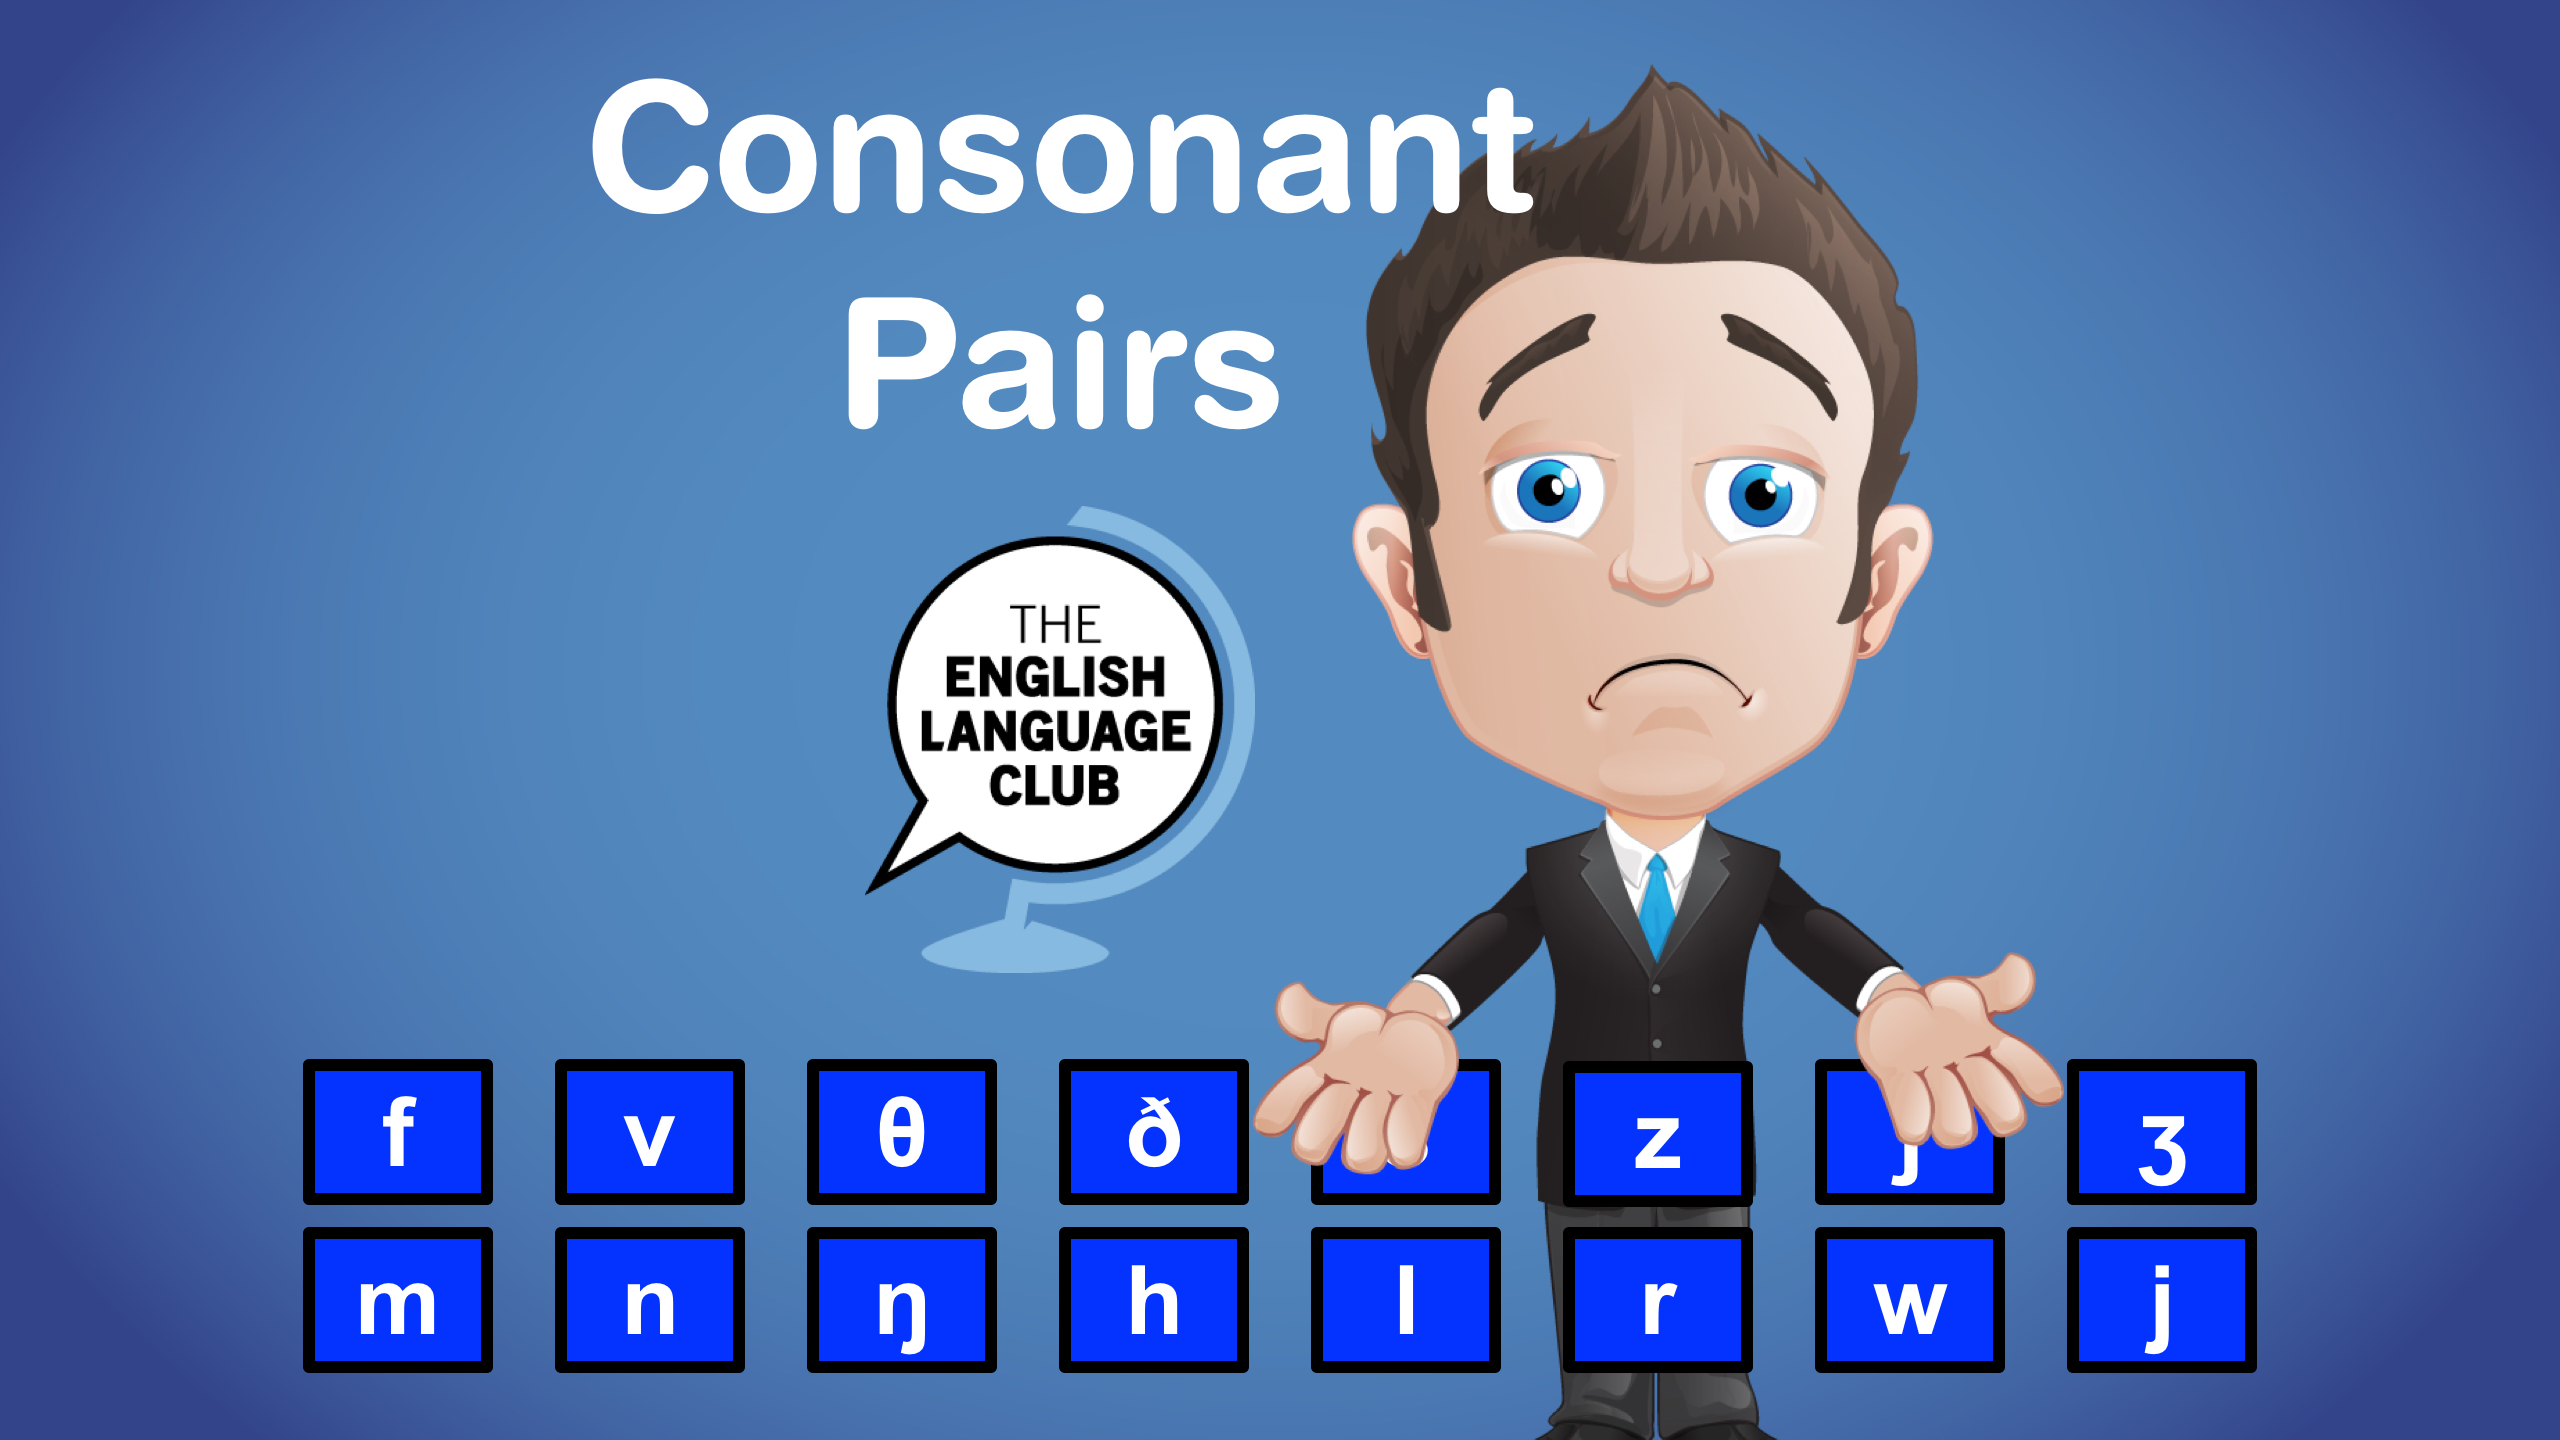 Consonant Pairs - English Language Club